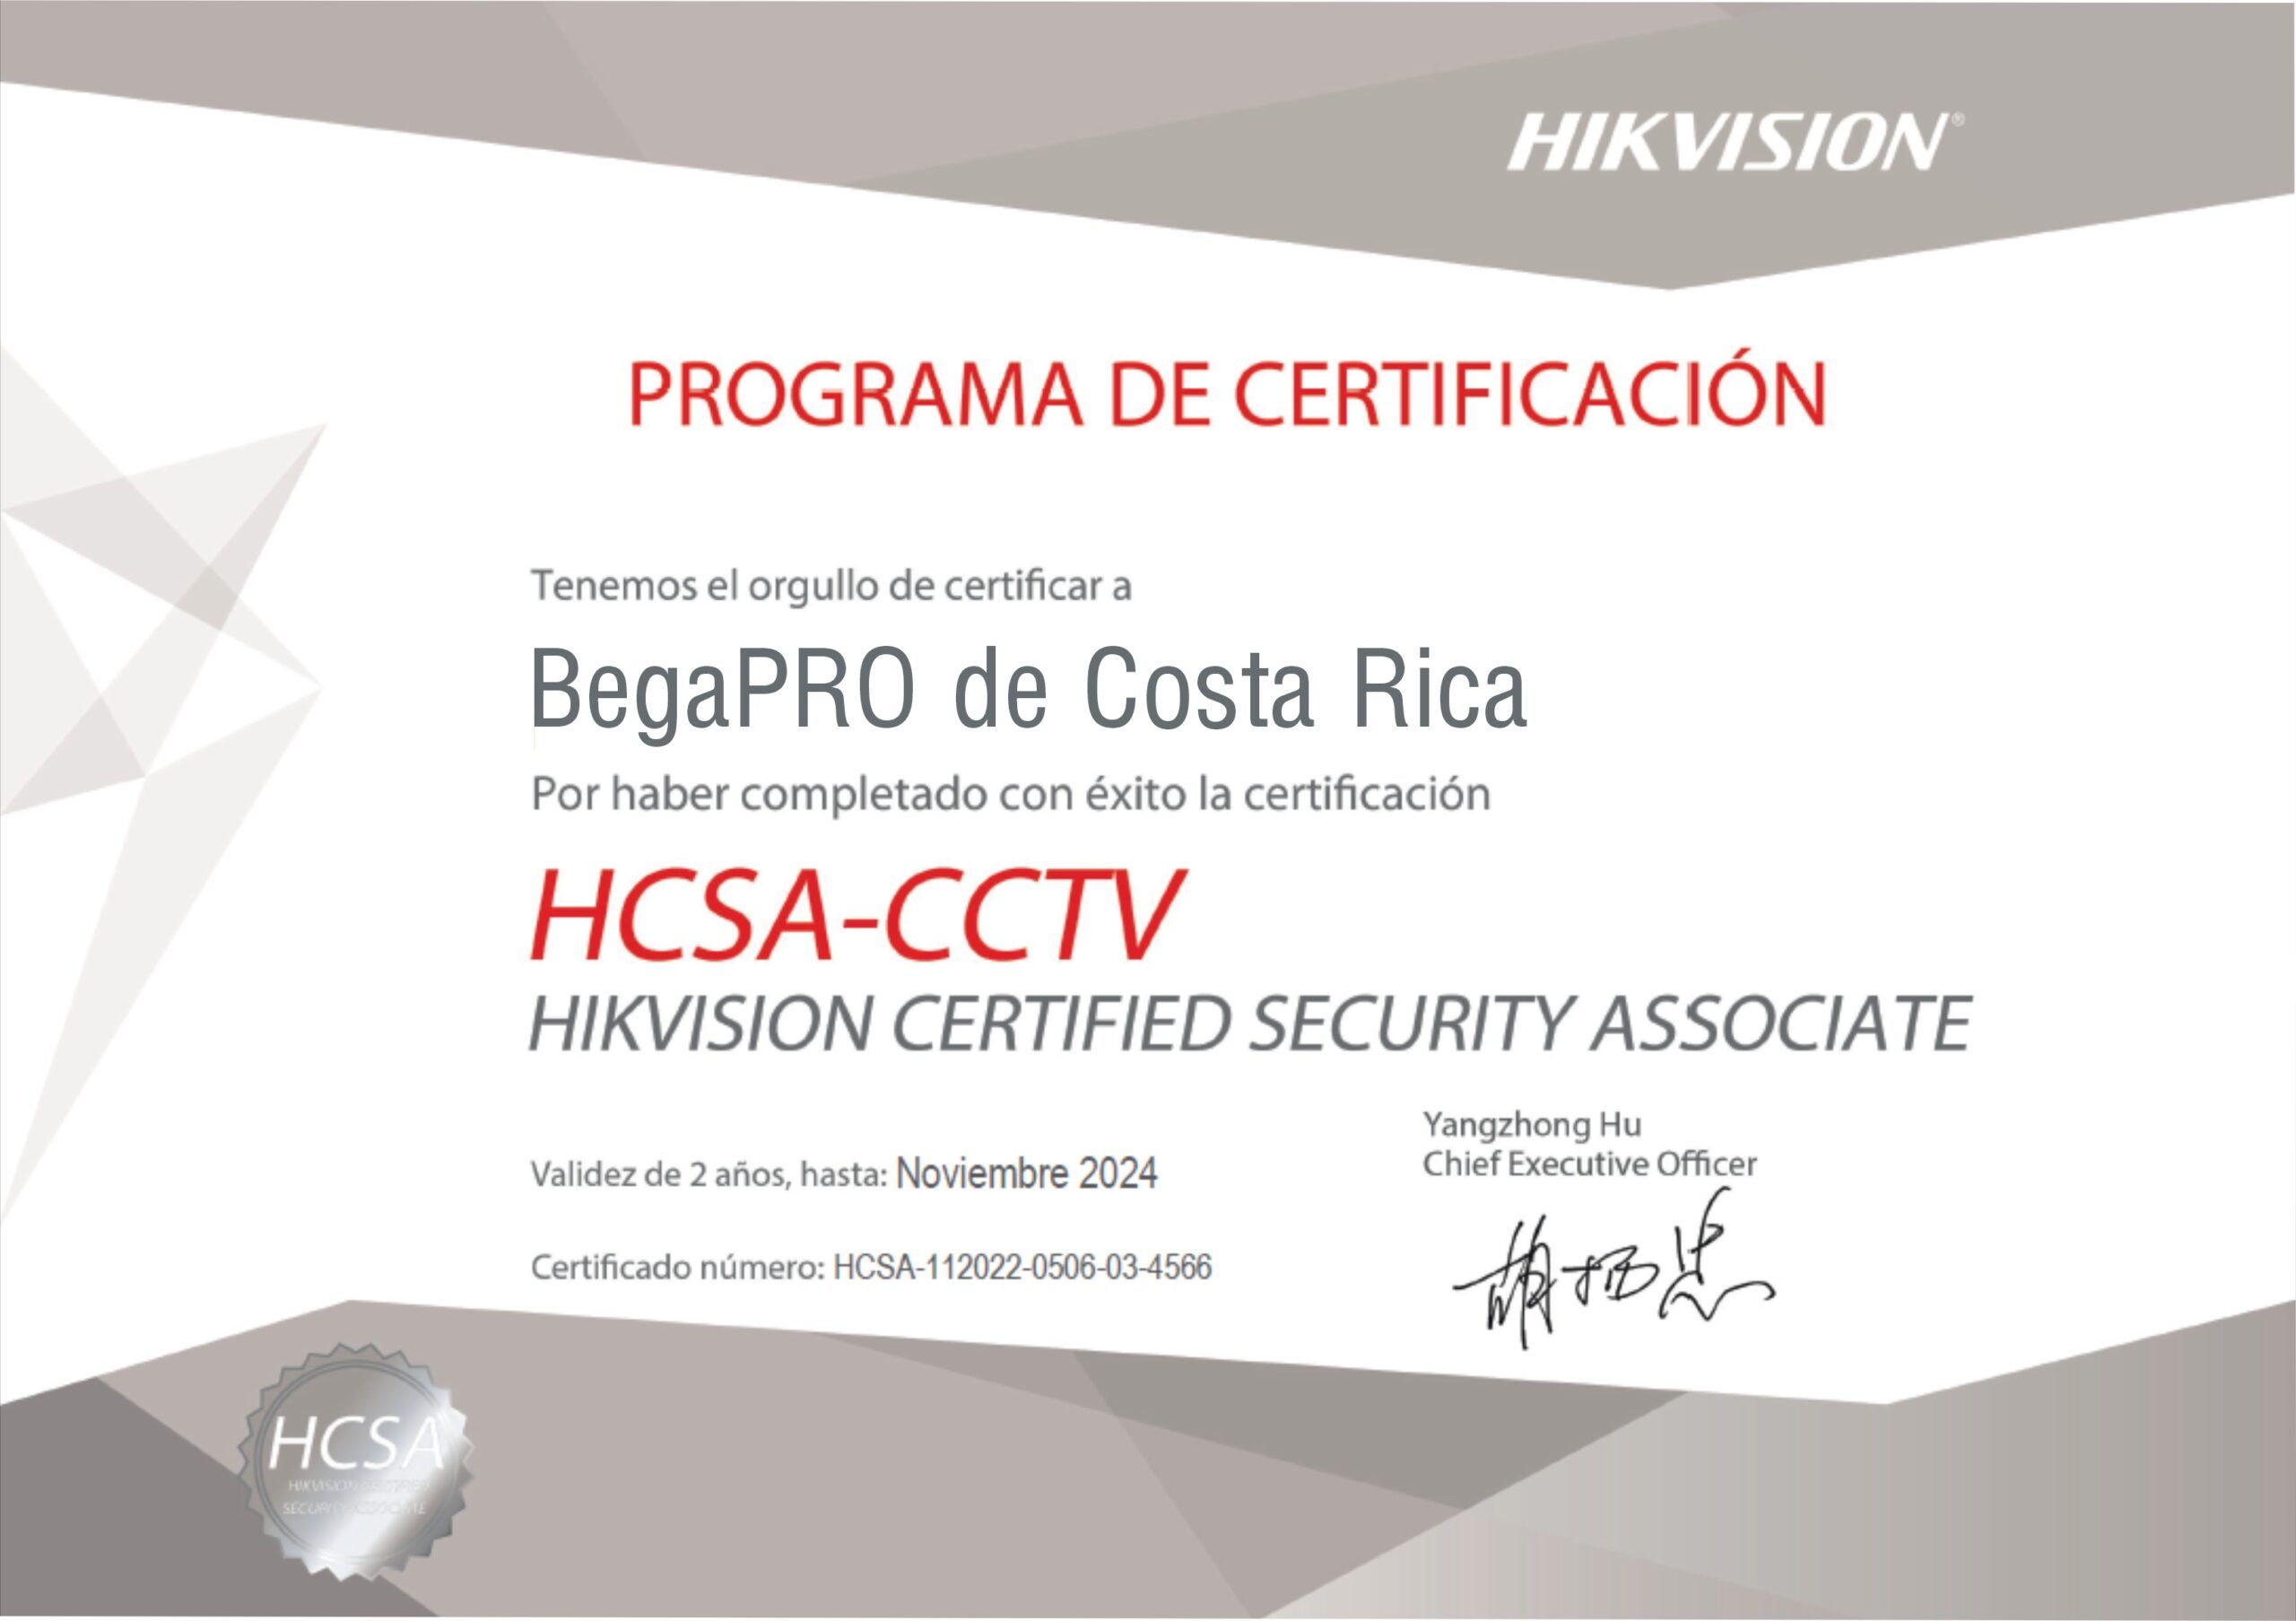 HCSA-CCTV